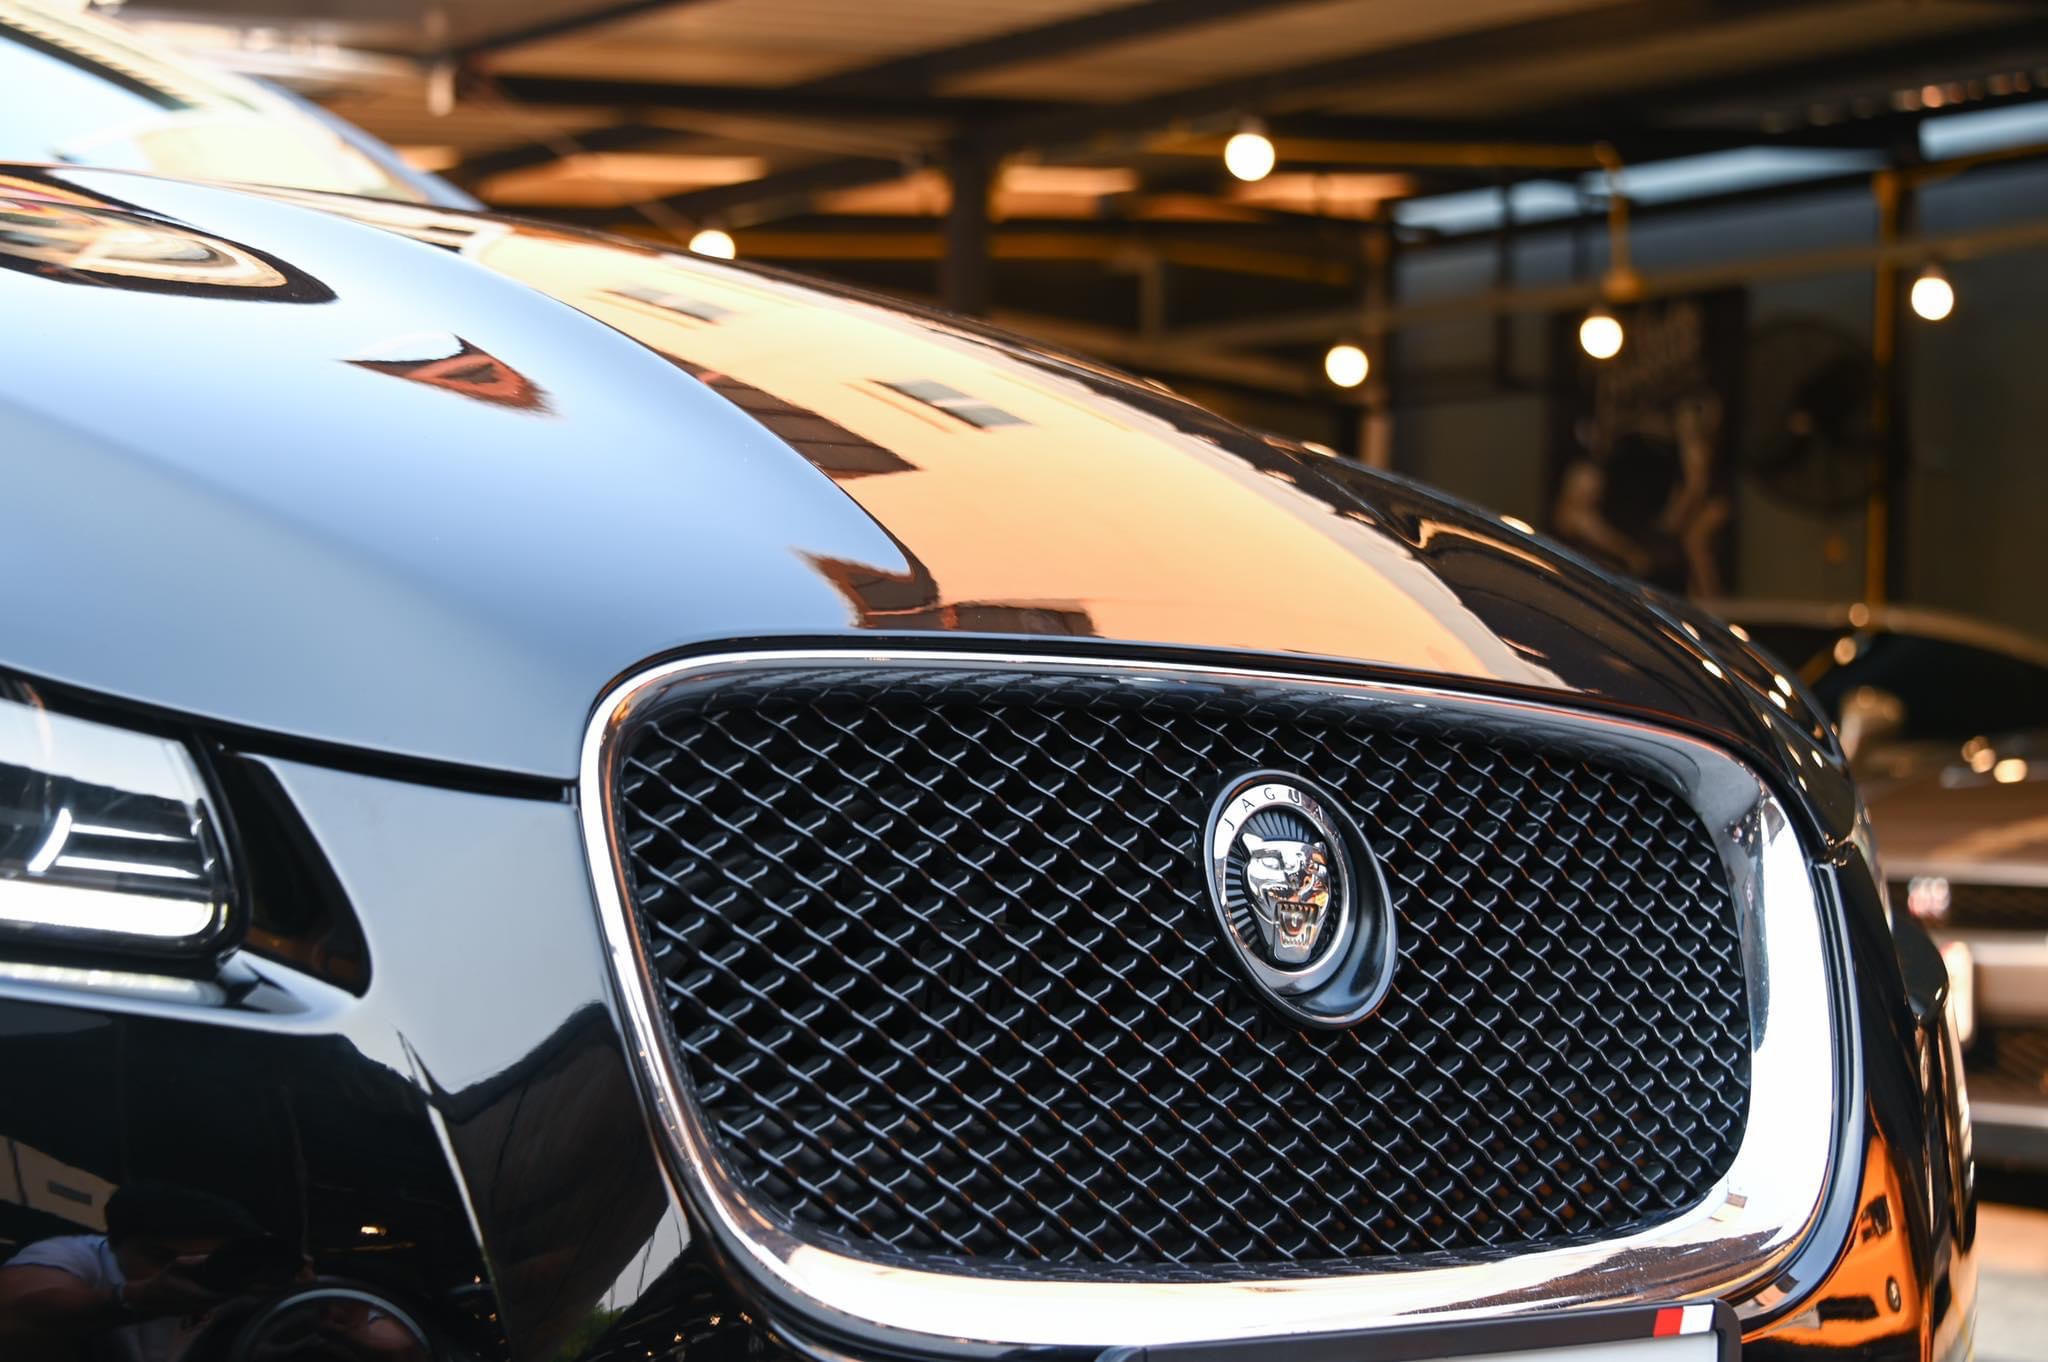 Jaguar XF 2013 สีดำ